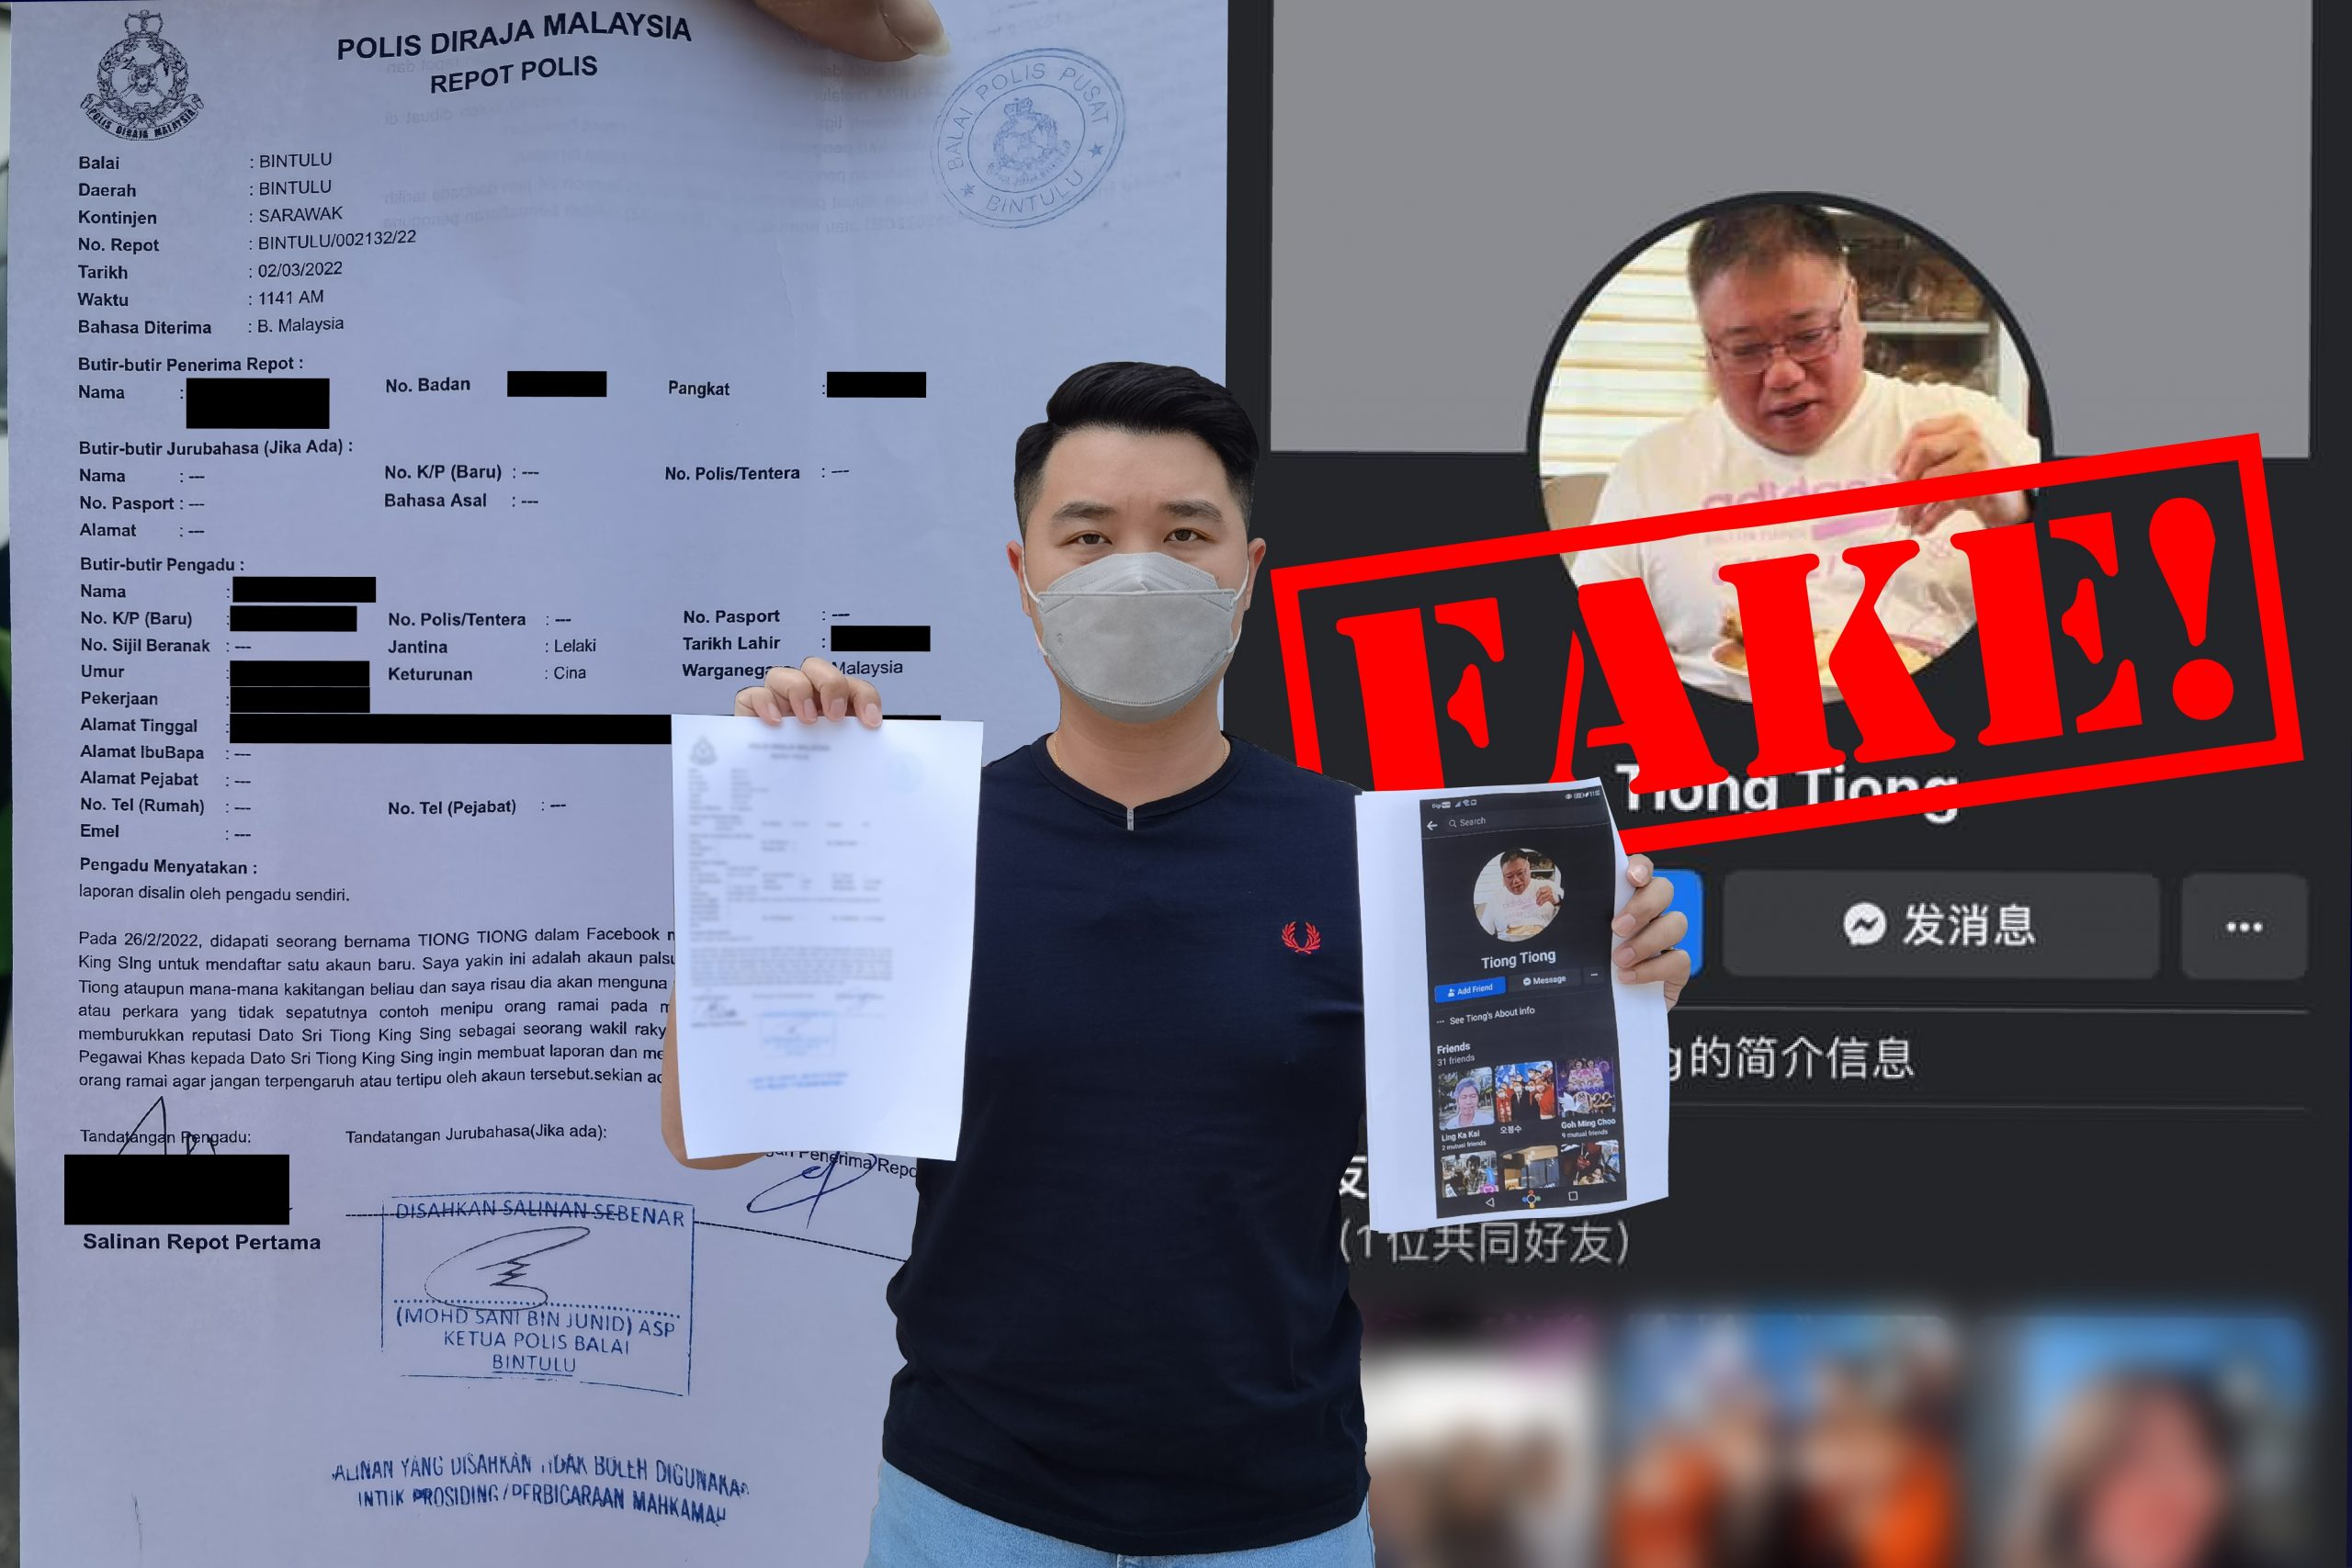 脸书用户“Tiong Tiong”盗用张庆信照片，恐动机不良民众须慎防